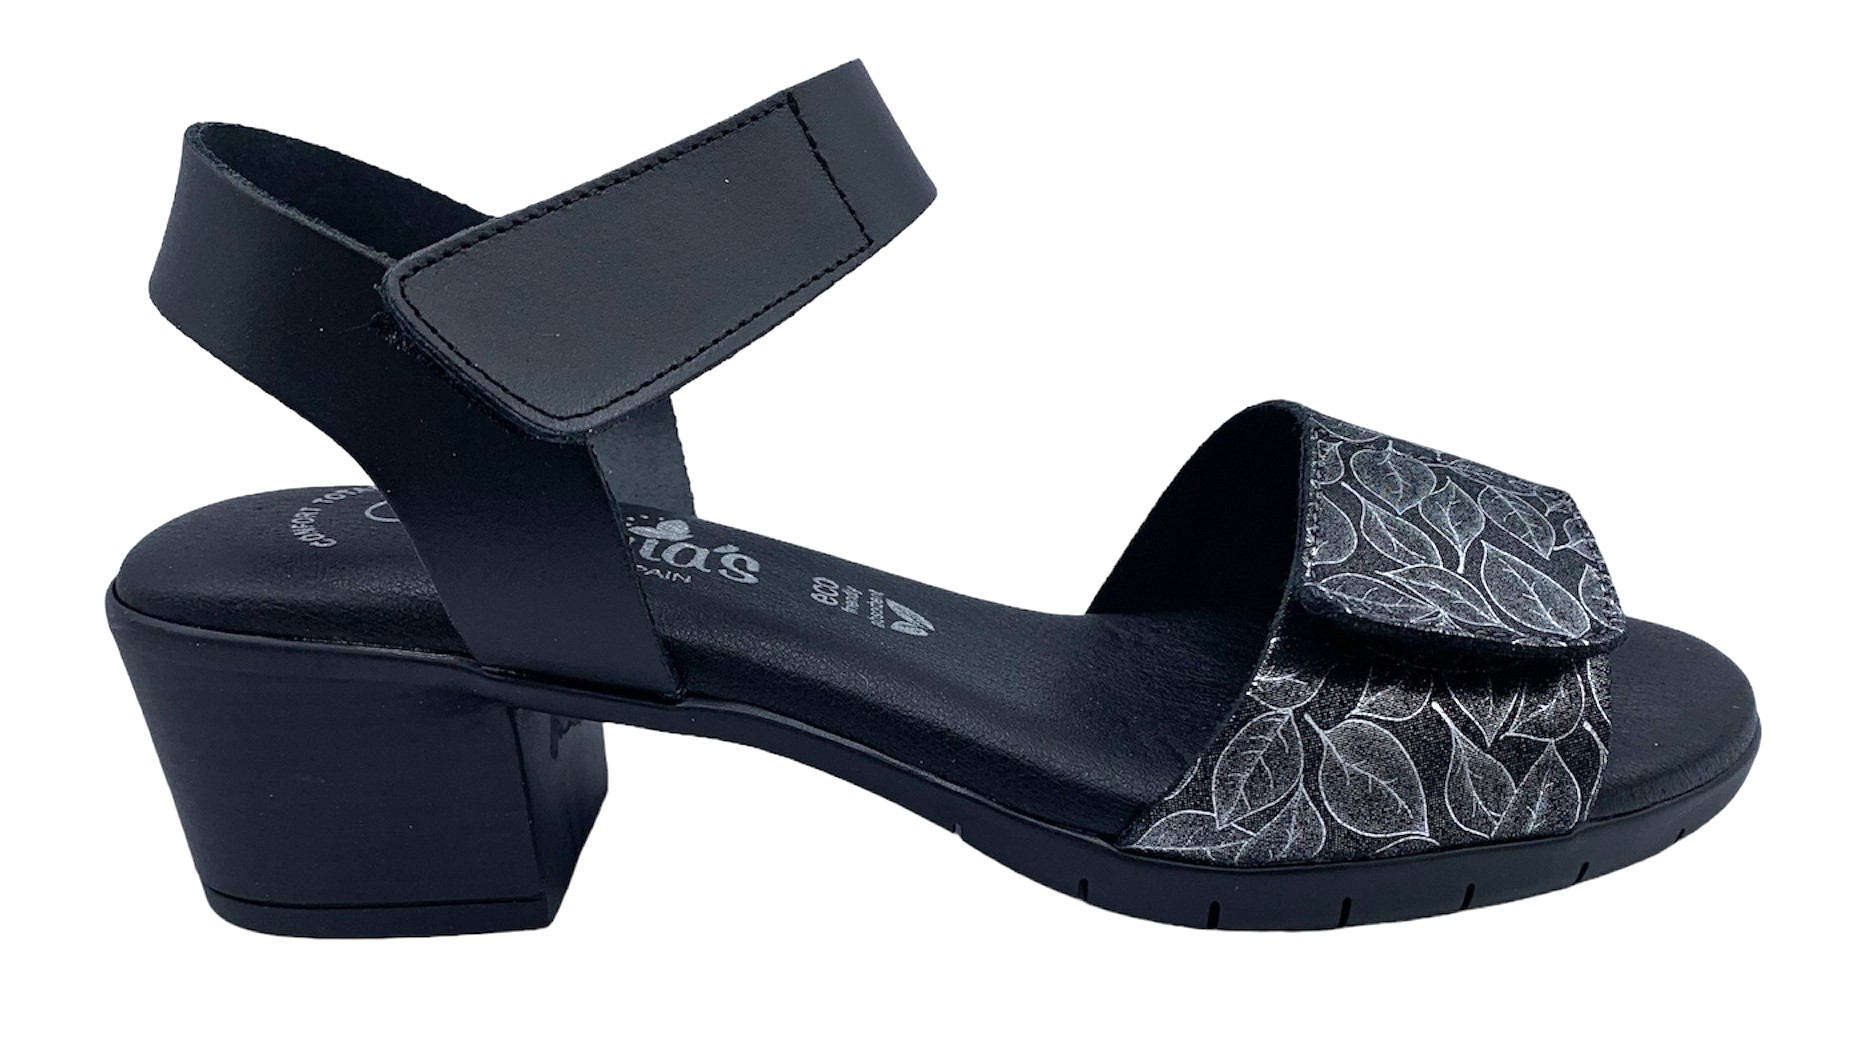 Dámské kožené sandále na podpatku MISSTIC 1172 černé Velikost: 41 (EU)